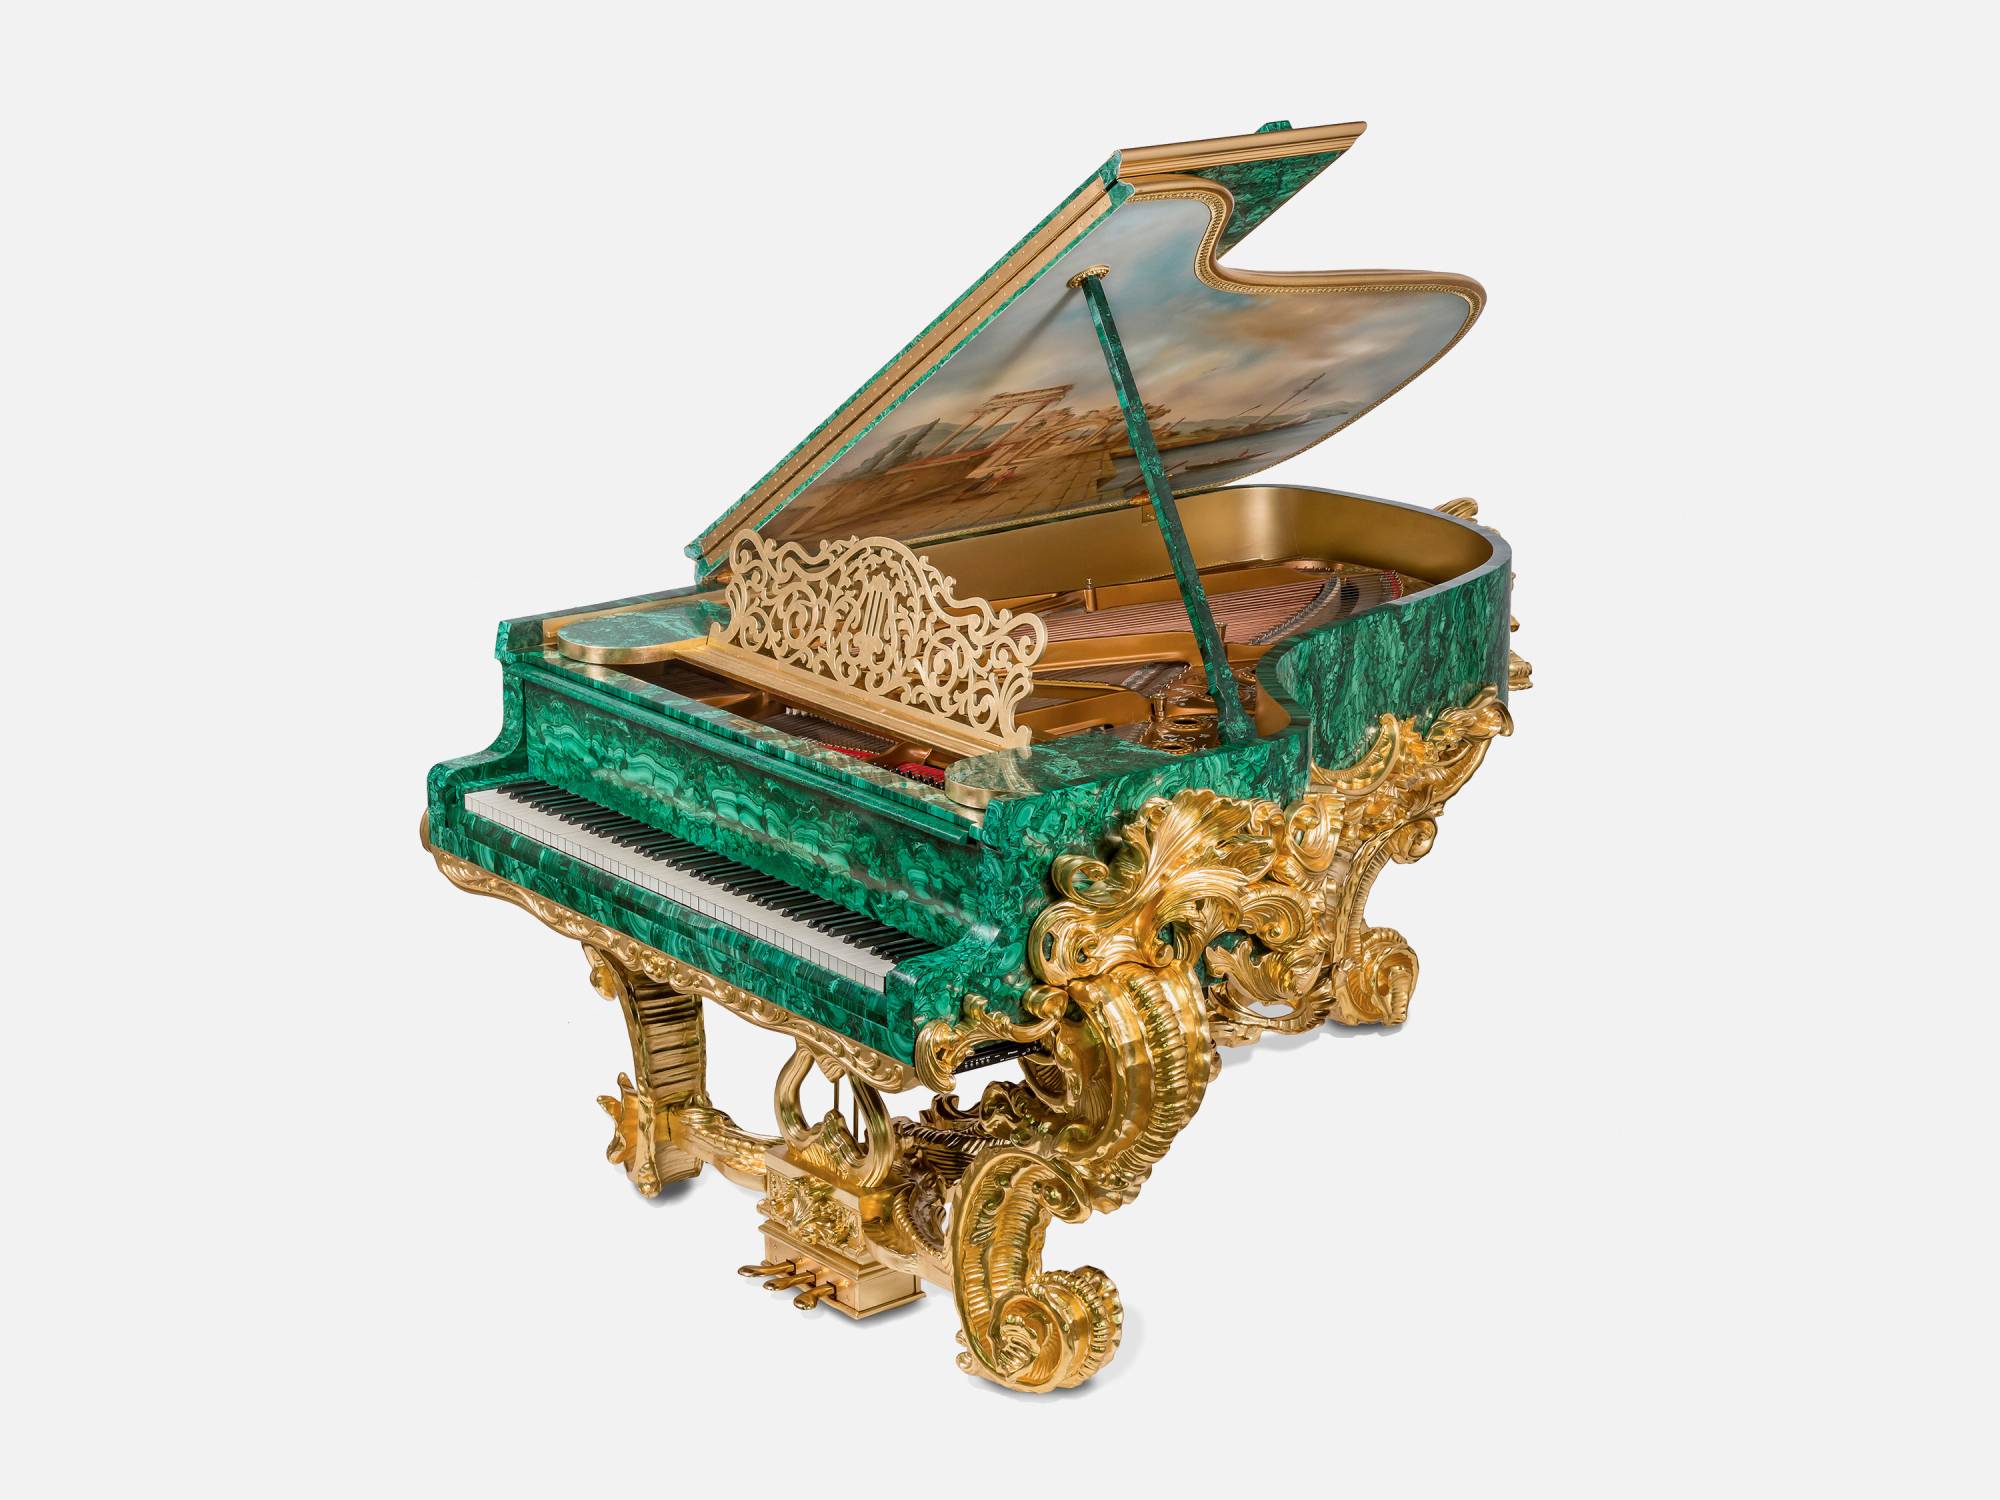 ART. 2710 – C.G. Capelletti Italian Luxury Classic Pianos. Made in Italy classic interior design